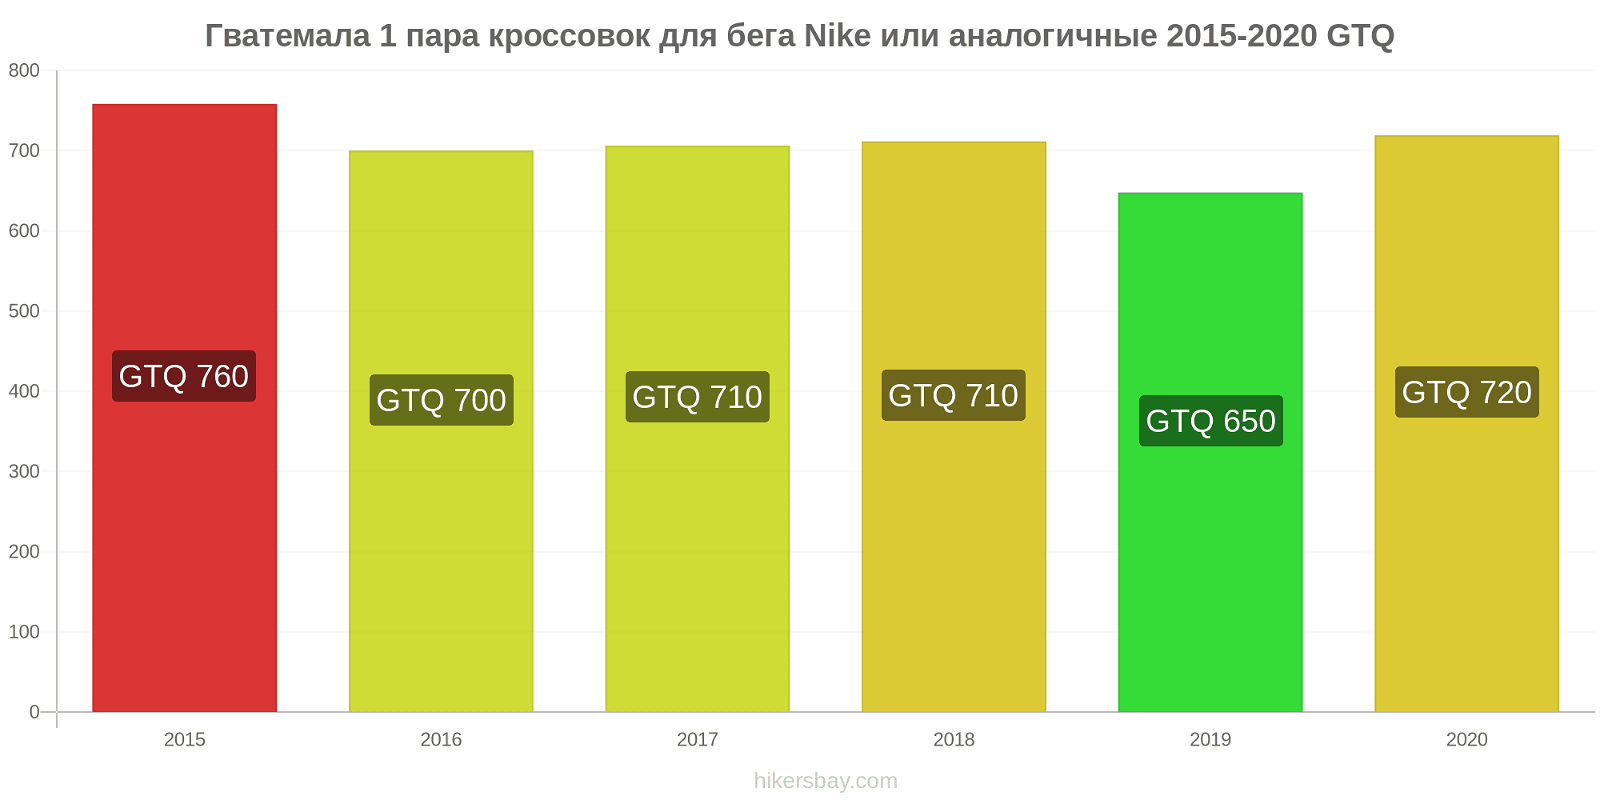 Гватемала изменения цен 1 пара кроссовок для бега Nike или аналогичные hikersbay.com